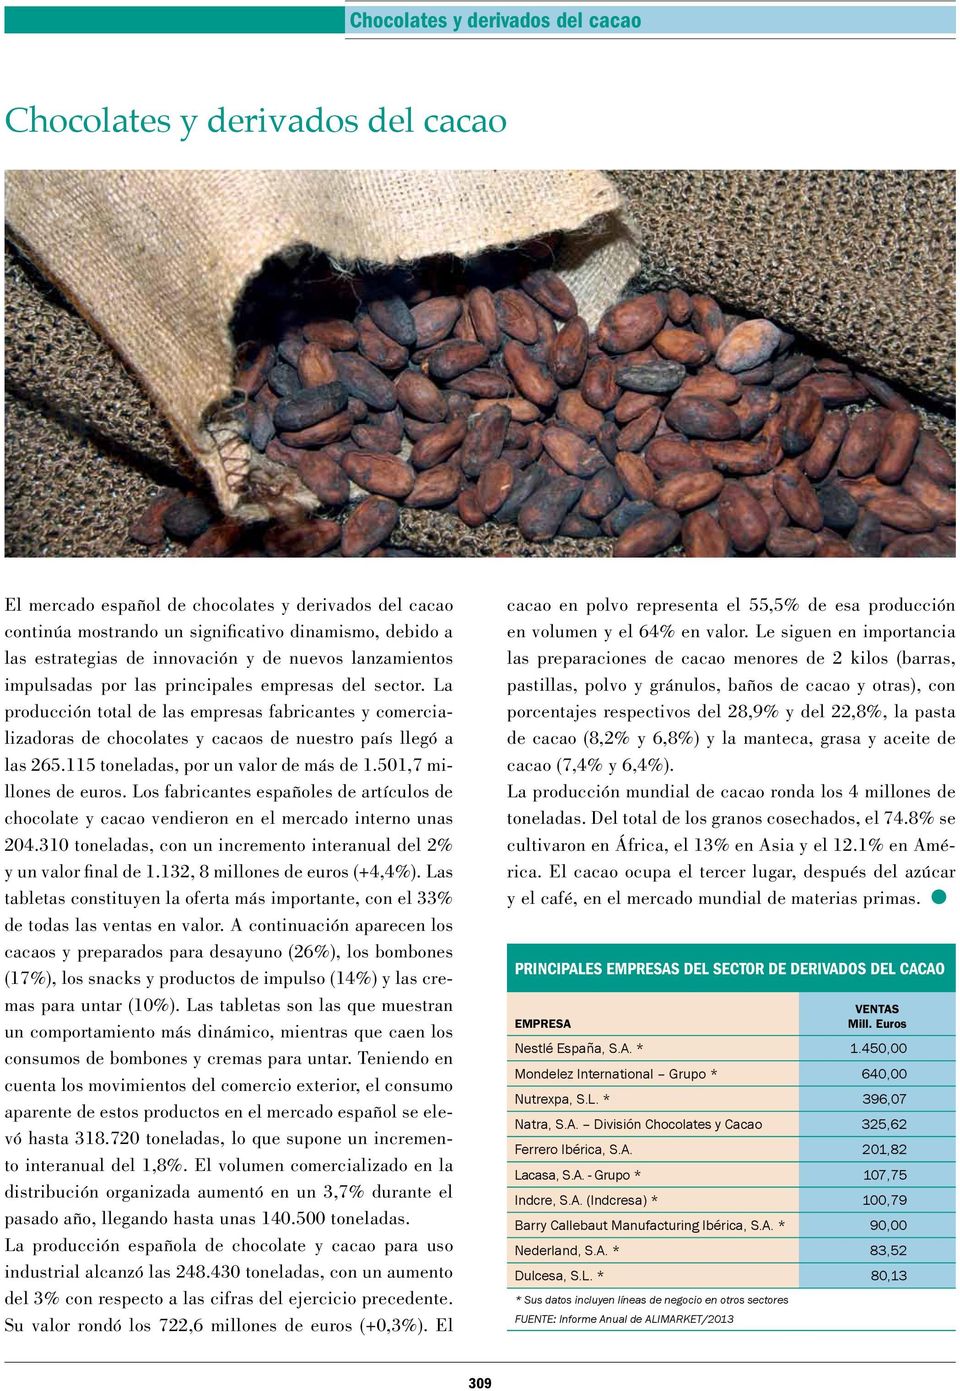 115 toneladas, por un valor de más de 1.501,7 millones de euros. Los fabricantes españoles de artículos de chocolate y cacao vendieron en el mercado interno unas 204.